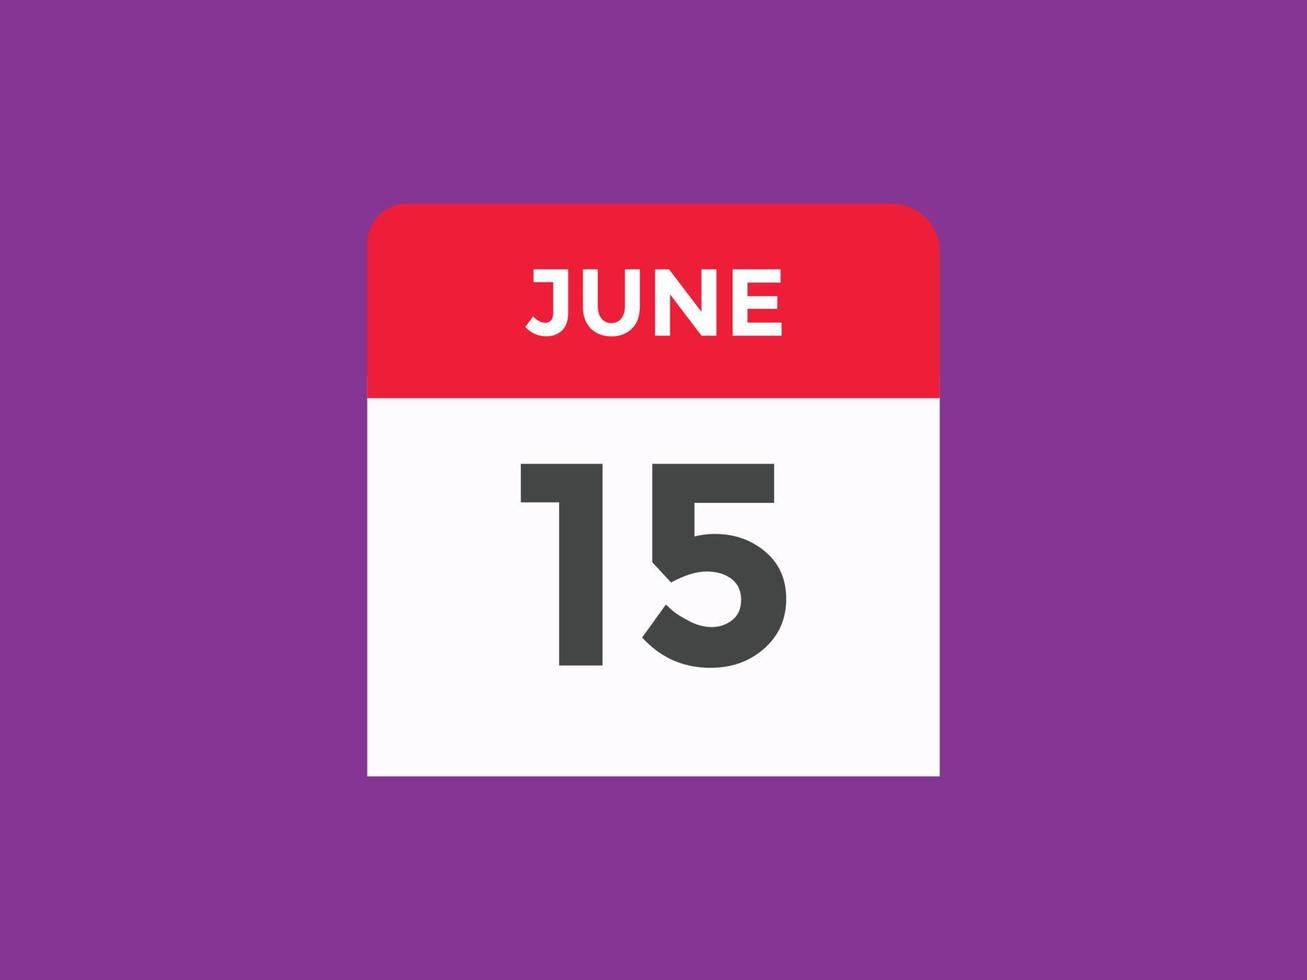 lembrete de calendário de 15 de junho. Modelo de ícone de calendário diário de 15 de junho. modelo de design de ícone de calendário 15 de junho. ilustração vetorial vetor